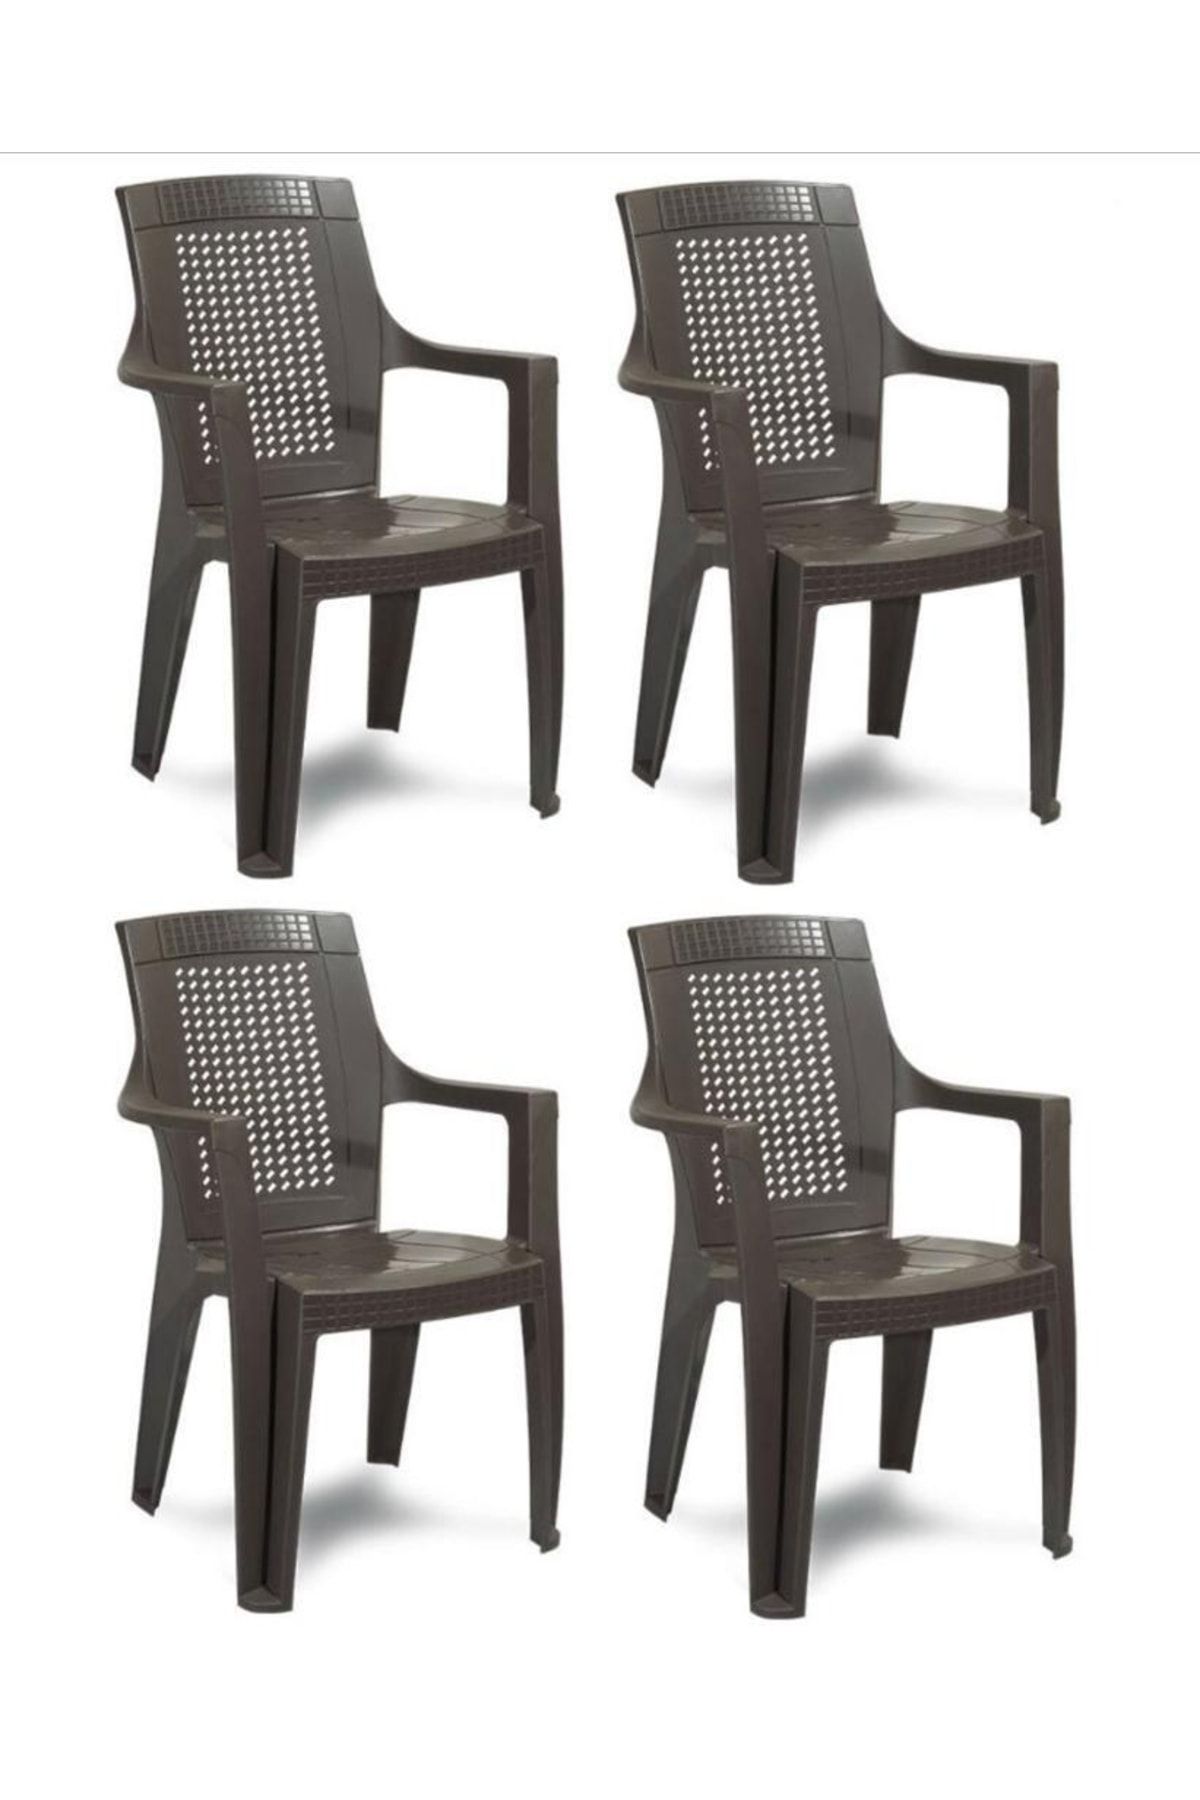 Gardelia Elegance Rattan Efektli Plastik Sandalye Bahçe Sandalyesi 4 Adet